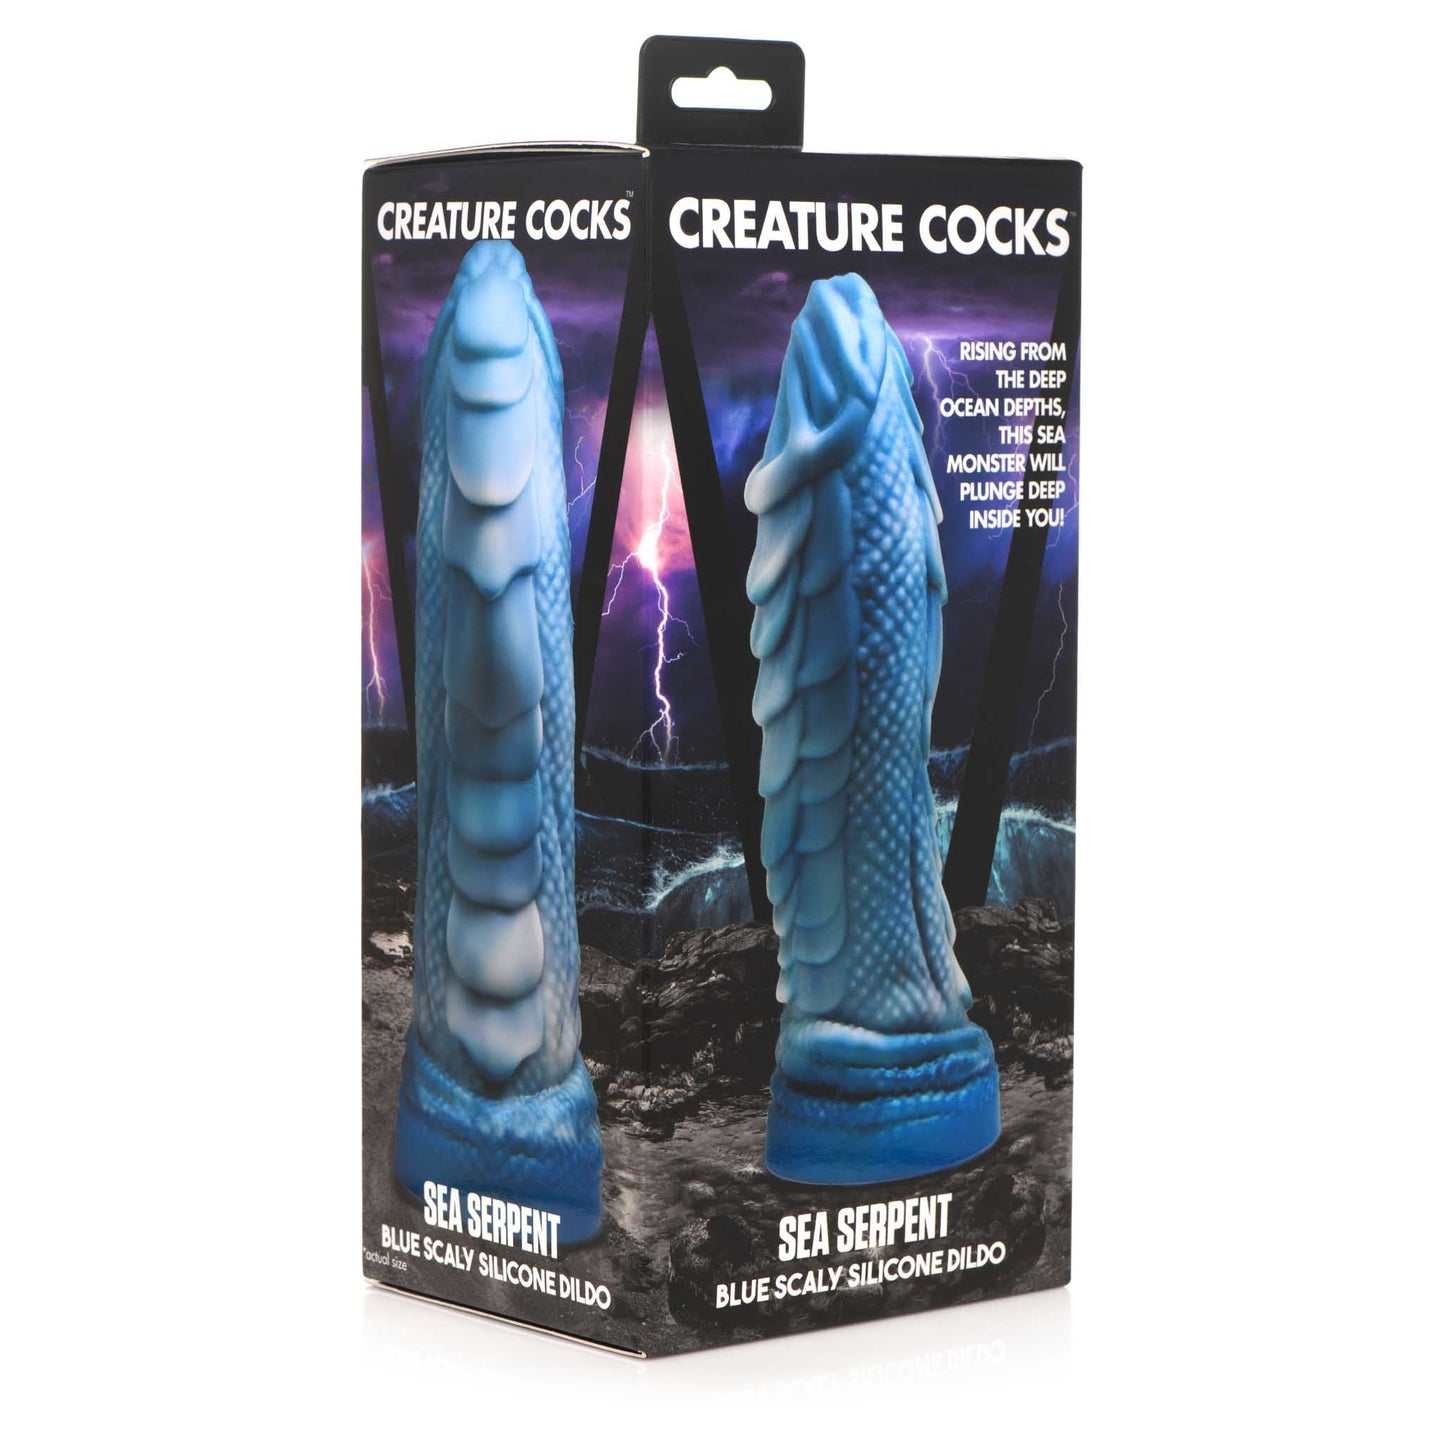 Creature Cocks Sea Serpent Scaly Silicone Dildo - Blue/Gray